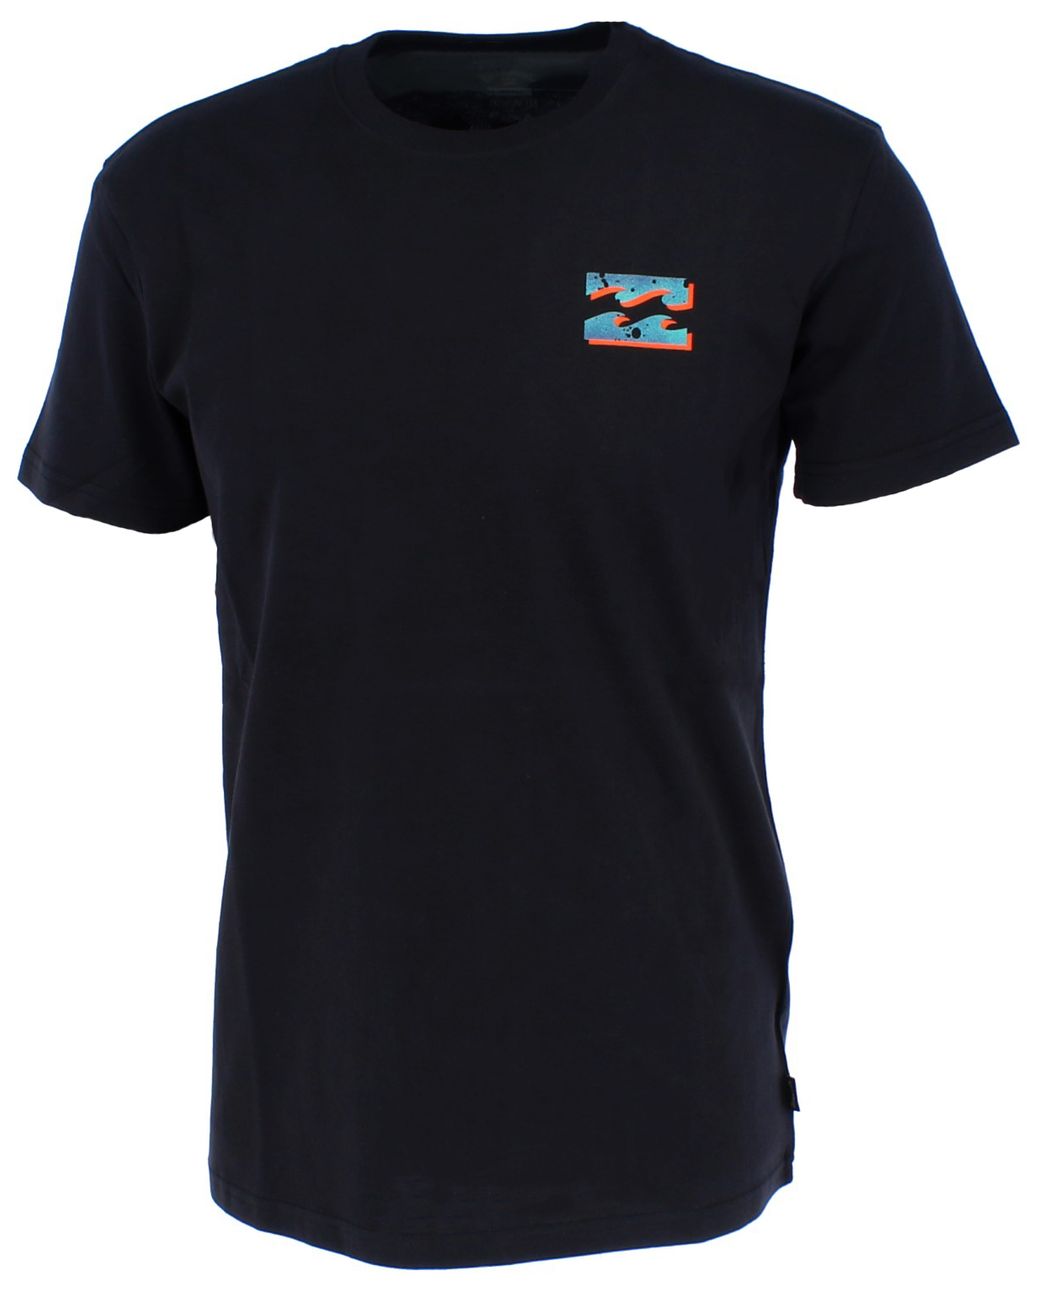 BILLABONG BUNKER Herren T-Shirt 100% Baumwolle - BillaBong - SAGATOO - 3664564975289